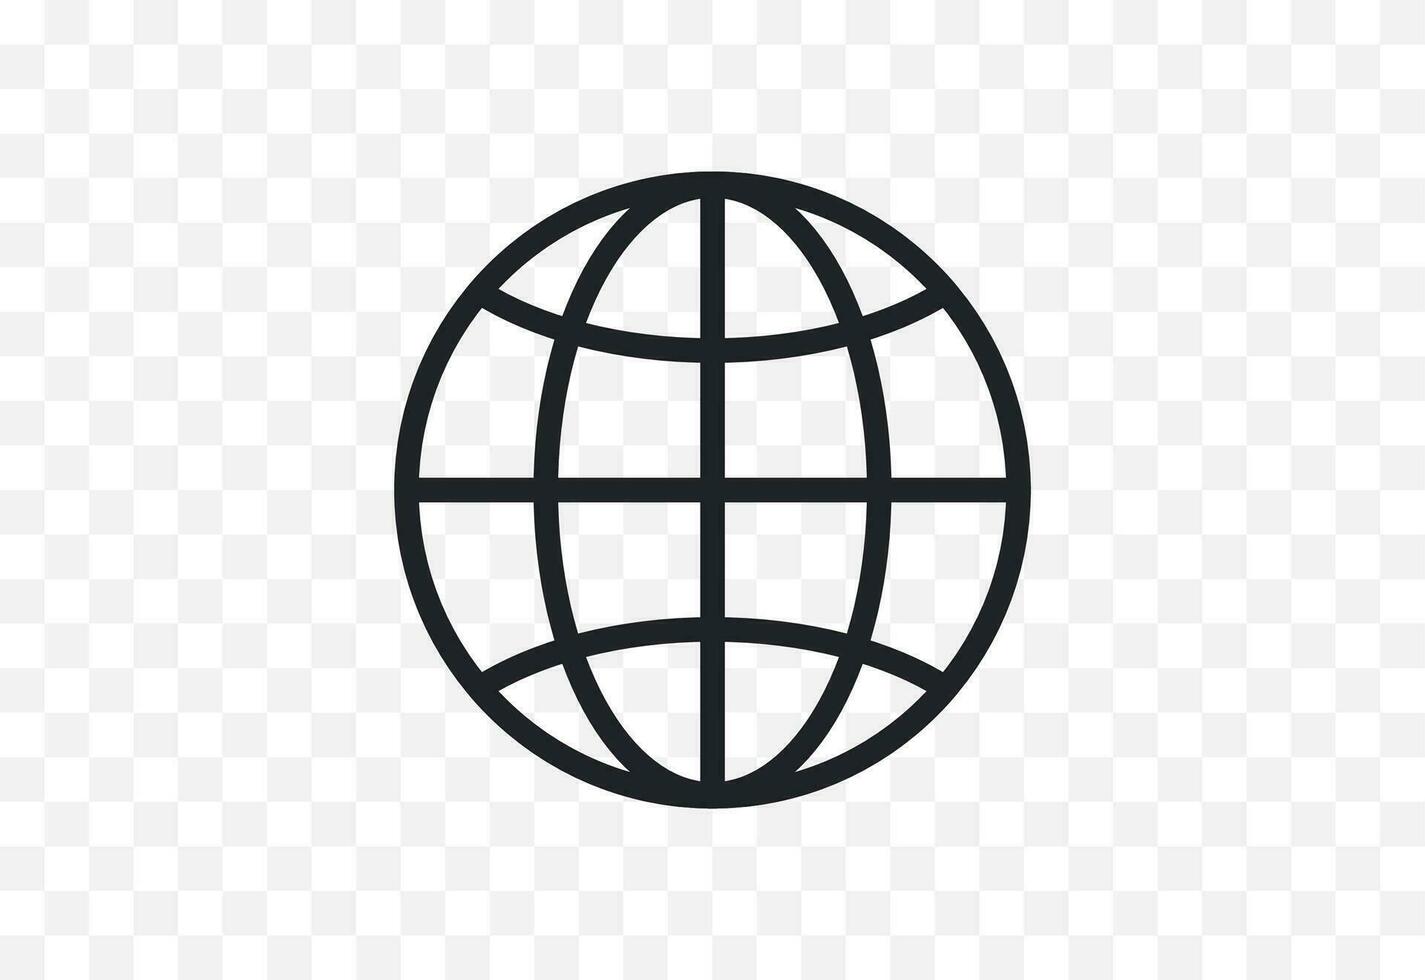 monde planète, la toile, réseau, globe, monde carte, Terre, global entreprise, voyage, lien plat conception style minimal vecteur illustration.